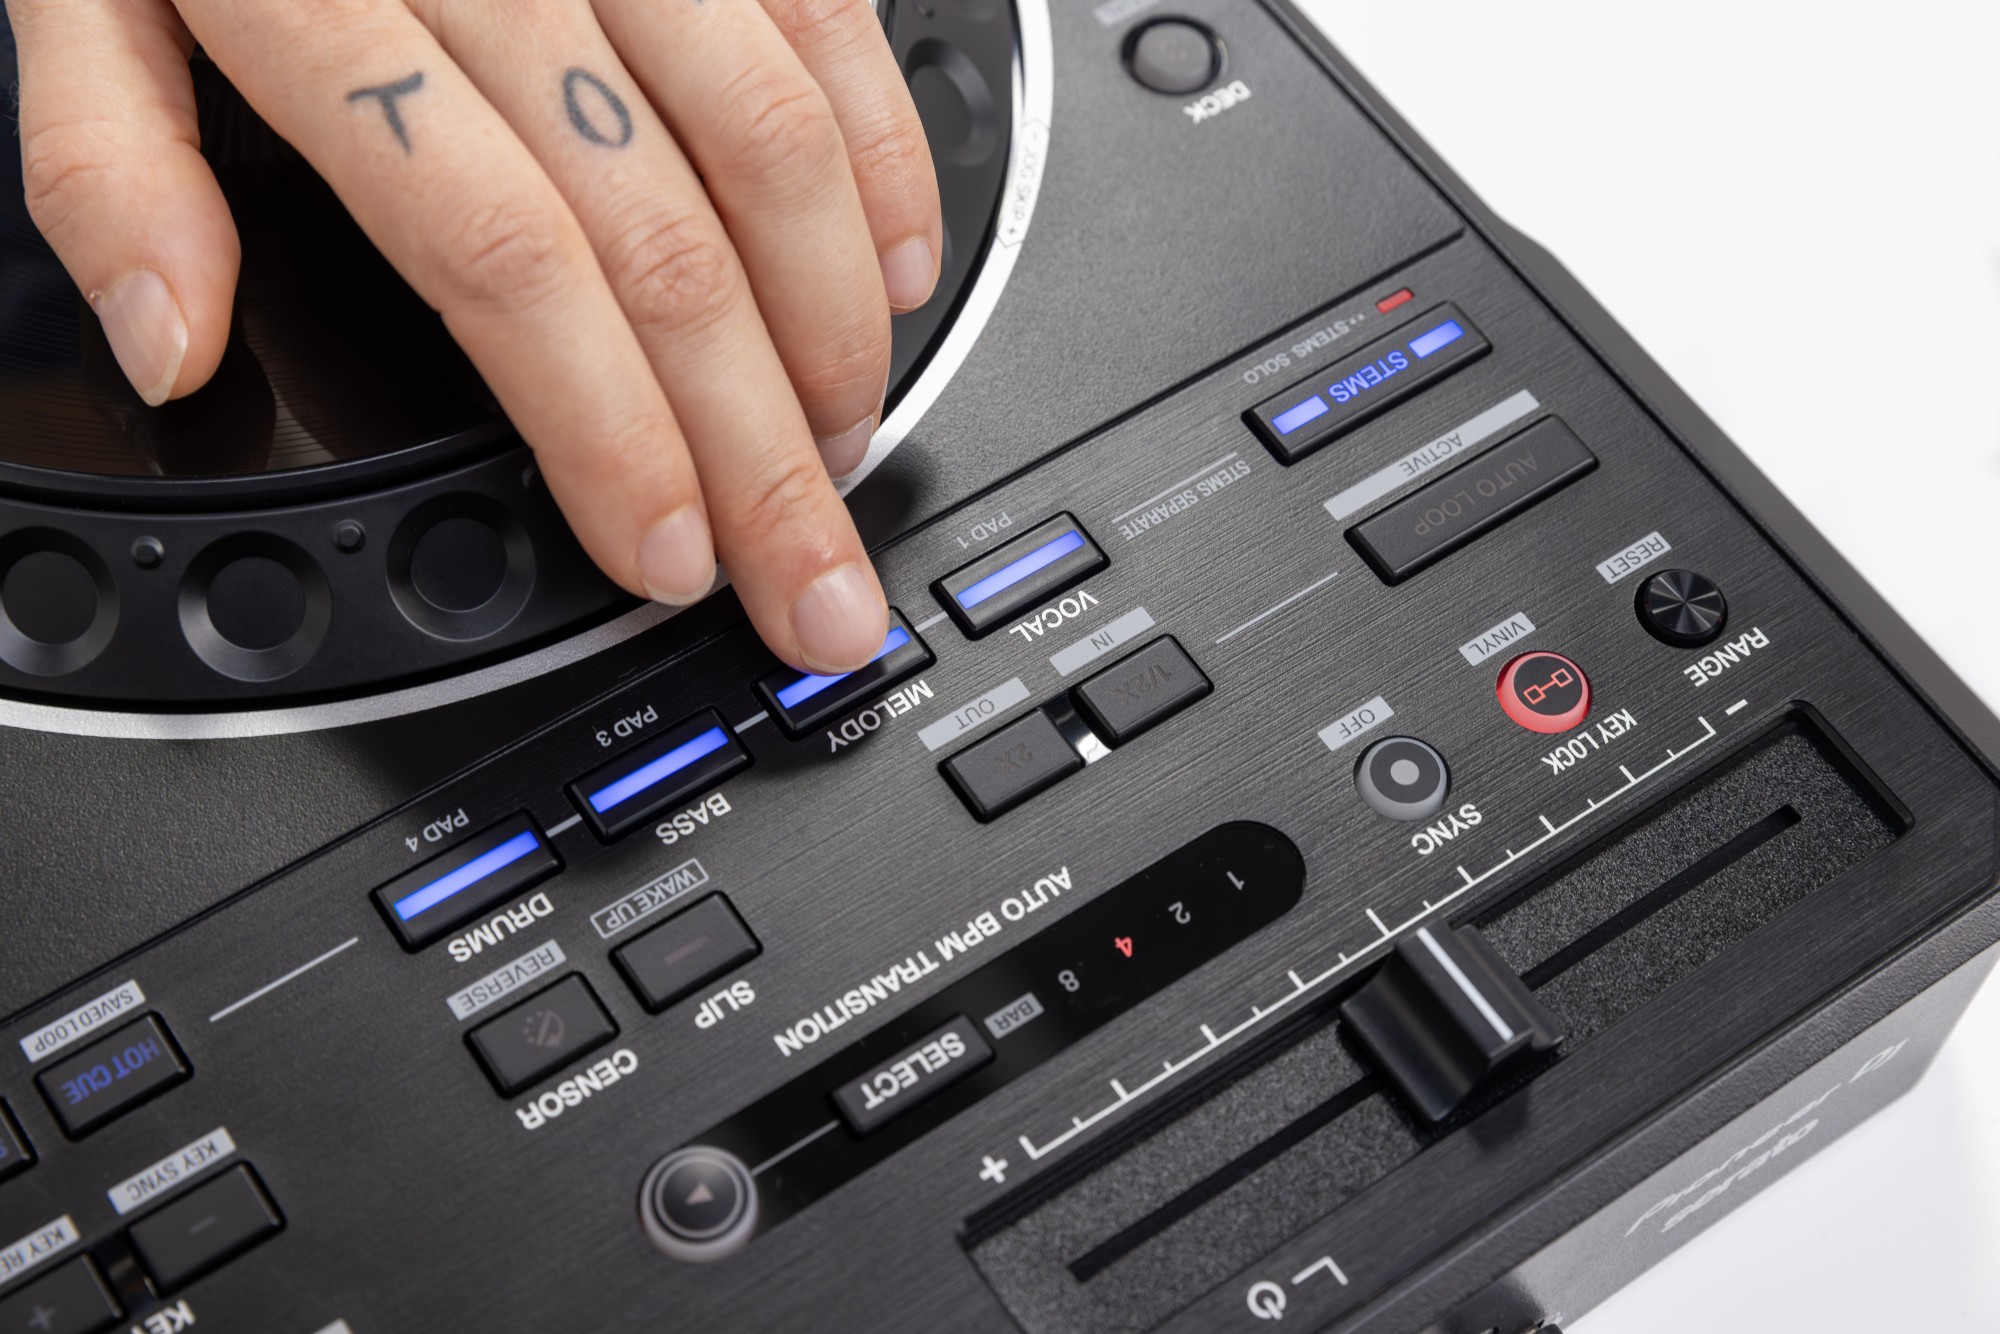 Pioneer Dj Ddj-rev5 - USB DJ controller - Variation 9